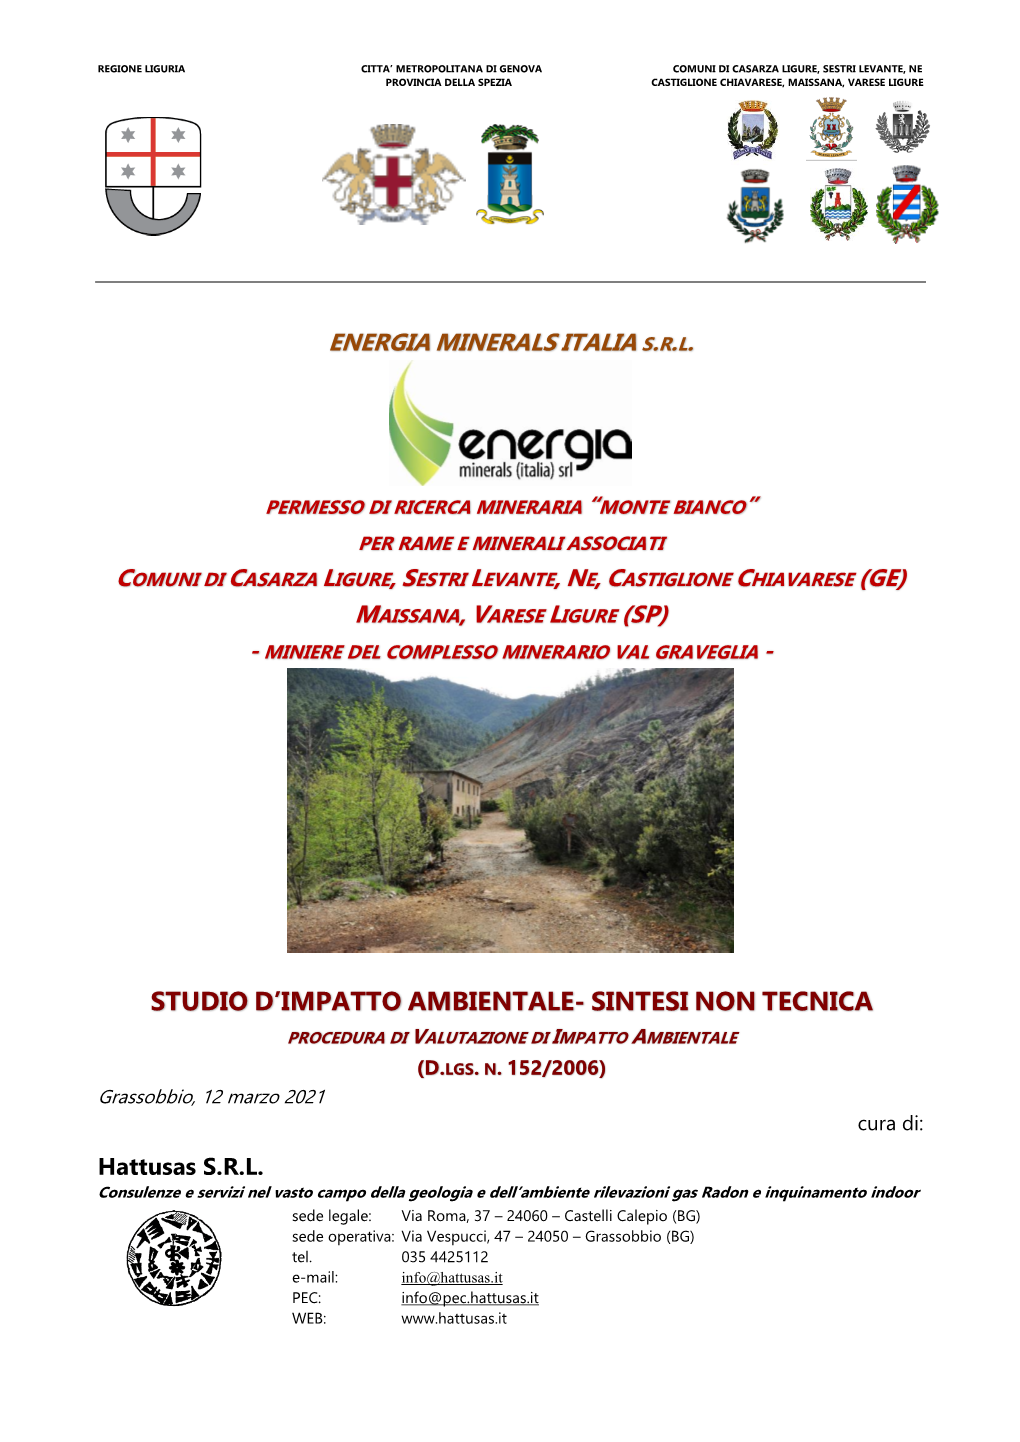 Studio D'impatto Ambientale- Sintesi Non Tecnica